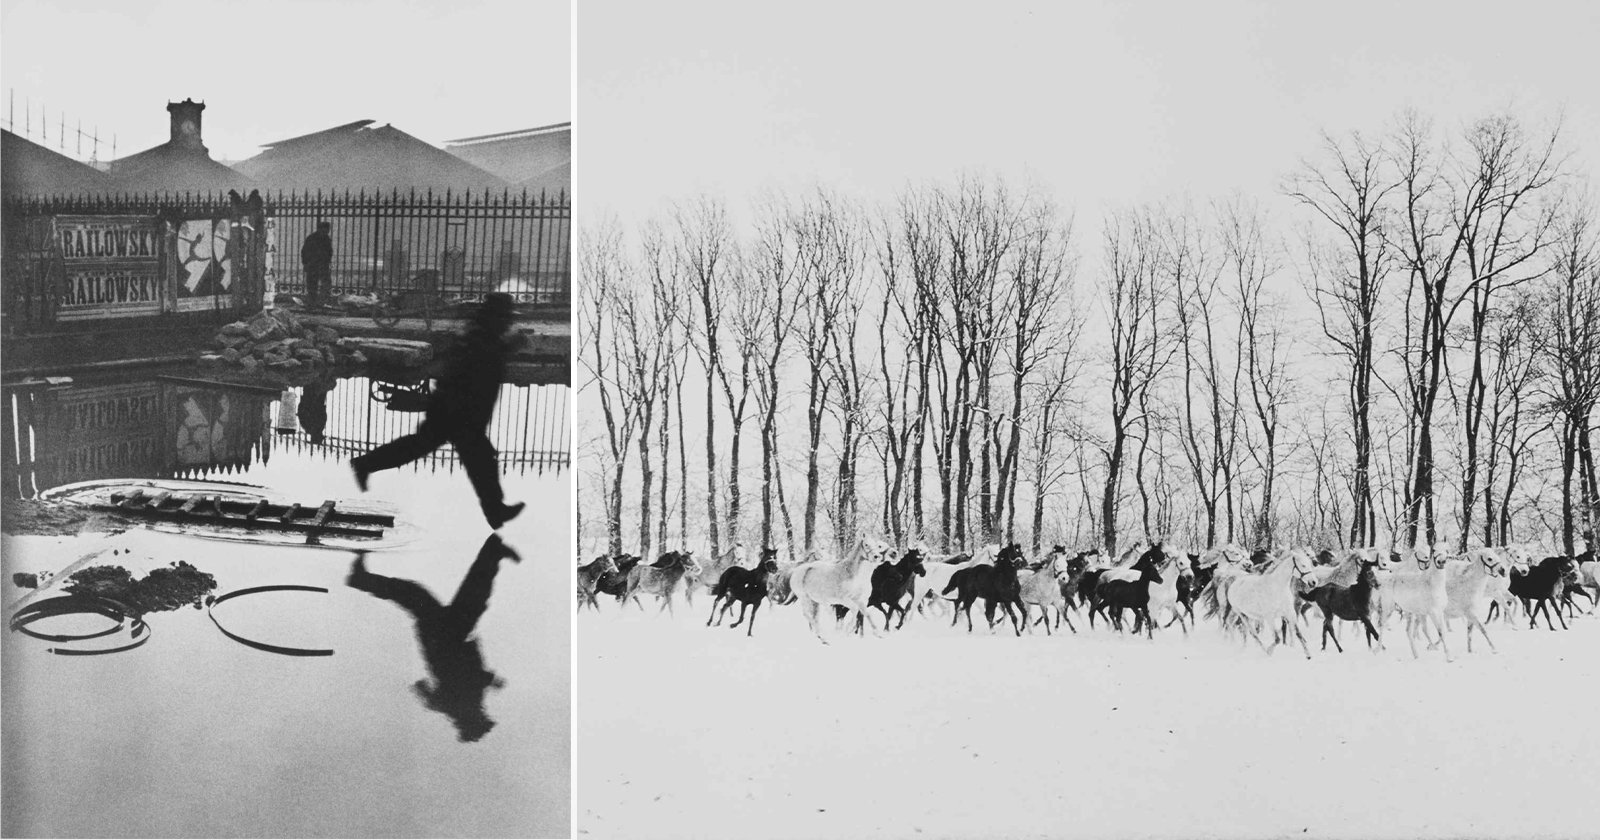 Henri Cartier-Bresson's famous work